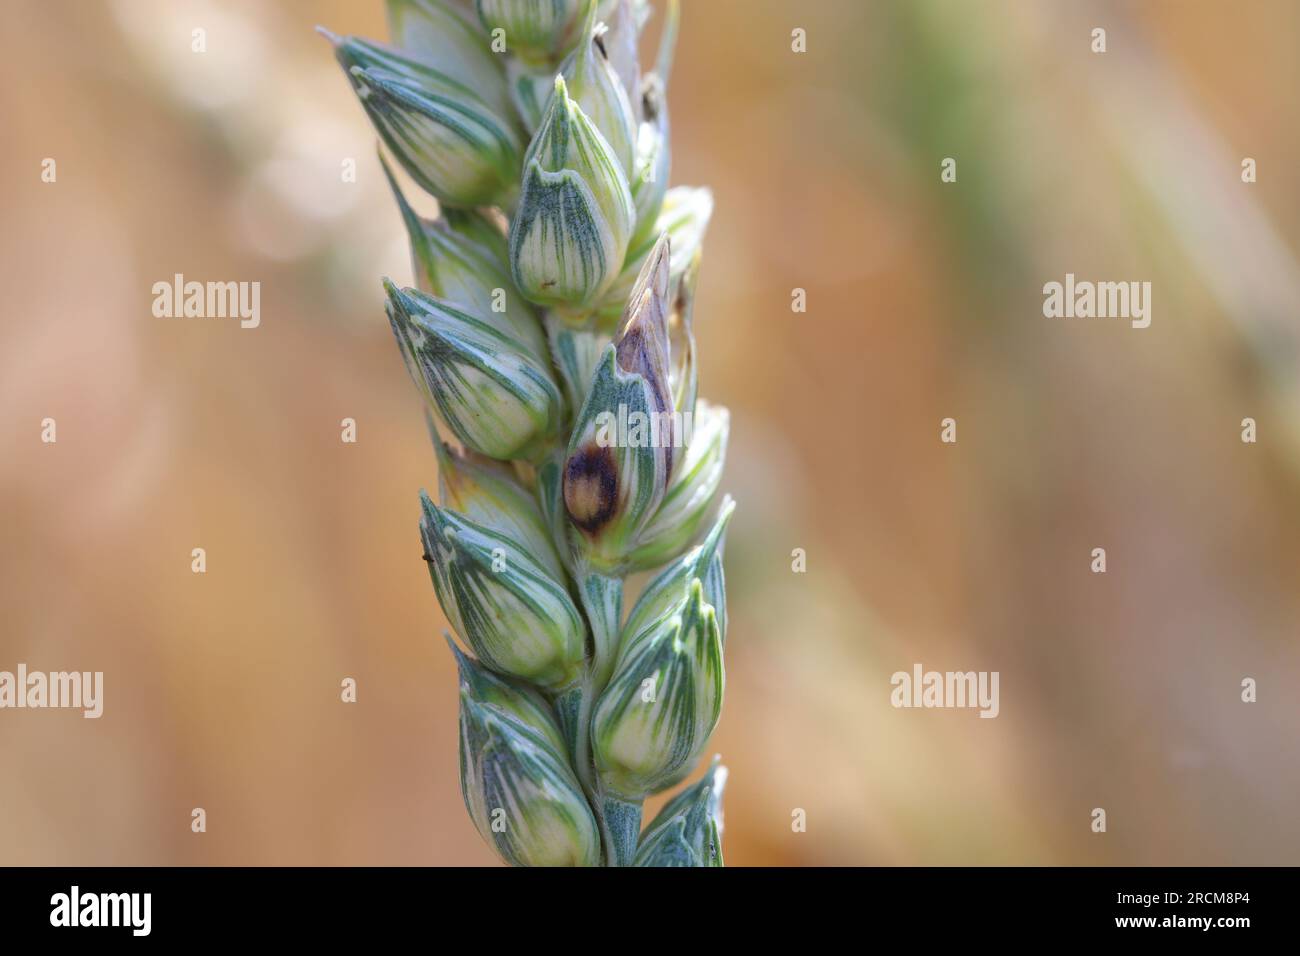 Glume blotch (Phaeosphaeria nodorum, Septoria glumarum) infected wheat ear. Cereals ear disease. Stock Photo